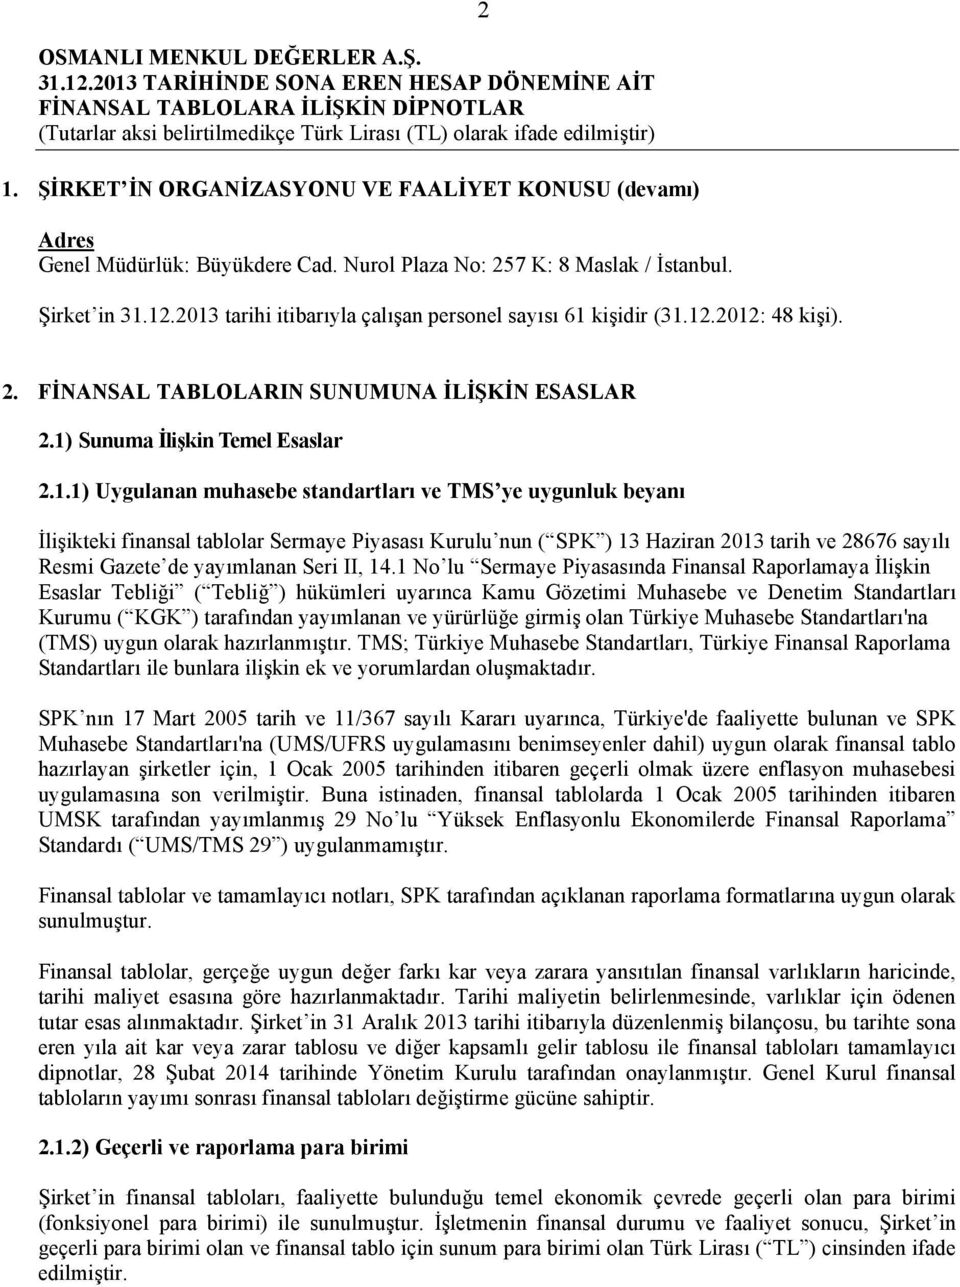 standartları ve TMS ye uygunluk beyanı İlişikteki finansal tablolar Sermaye Piyasası Kurulu nun ( SPK ) 13 Haziran 2013 tarih ve 28676 sayılı Resmi Gazete de yayımlanan Seri II, 14.